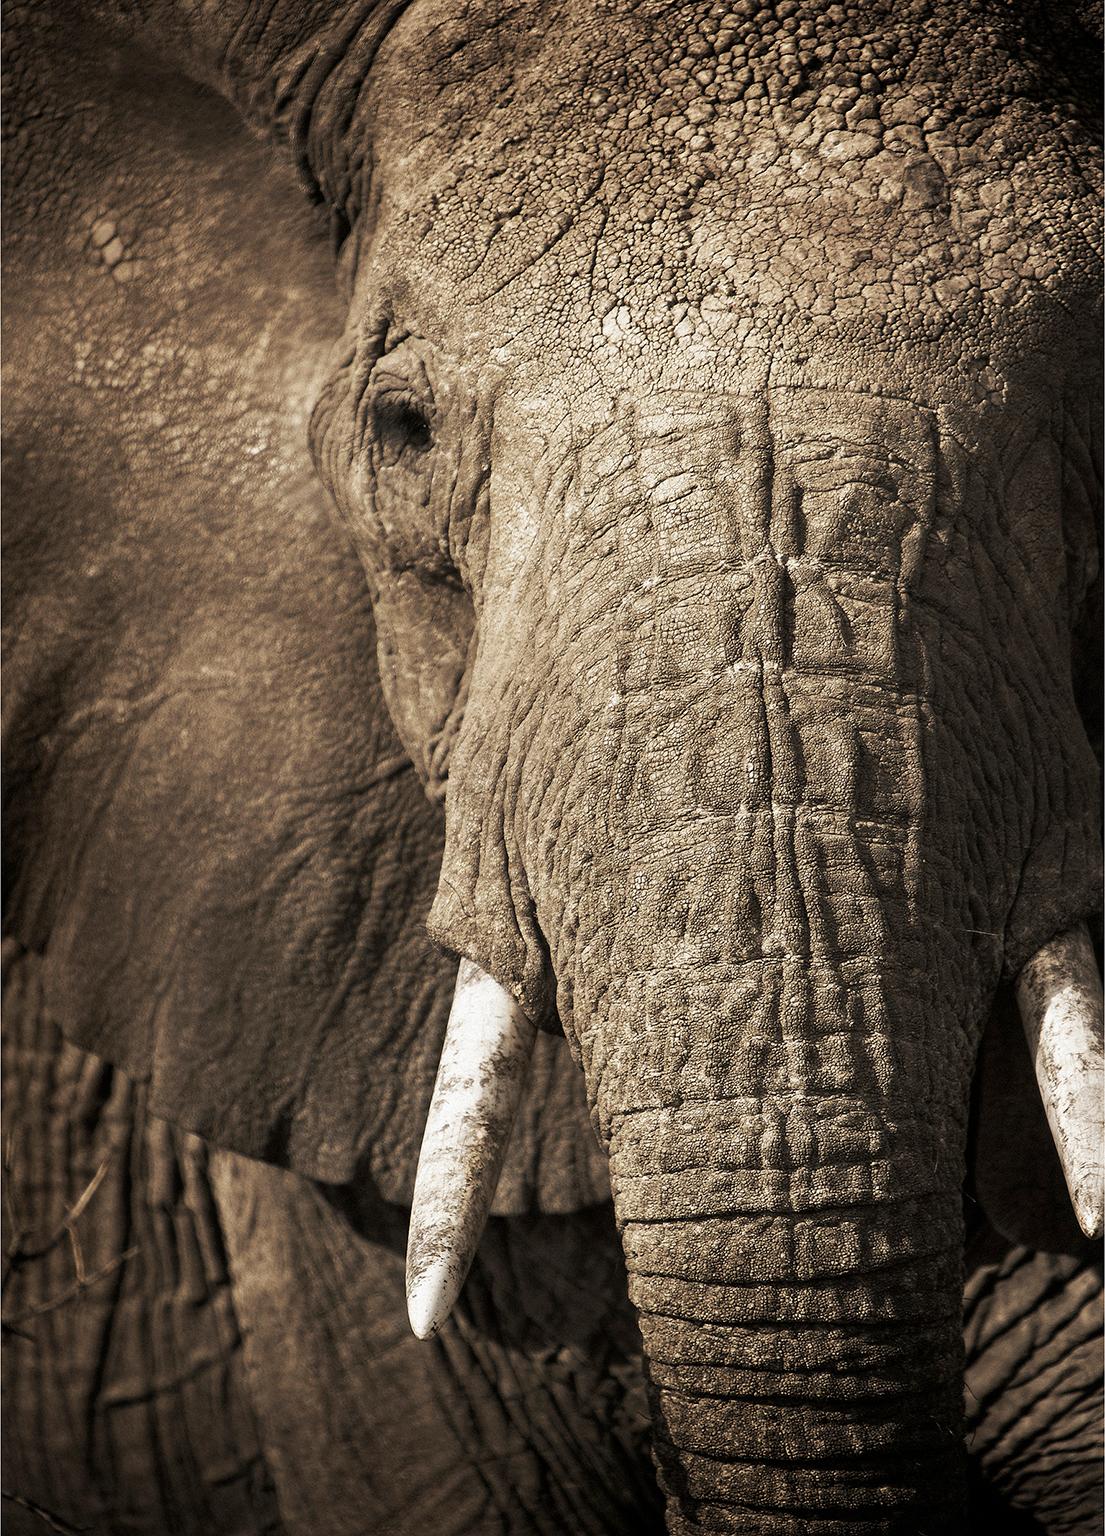 Elephant-04, Namibia, 2016. Archivierungs-Pigmentdruck. Auflage von 7.
Signiert, datiert und nummeriert vom Künstler.

Chris Gordaneer ist einer der leidenschaftlichsten Fotografen unserer Zeit. Seine Fotografie bewegt sich an der Schnittstelle